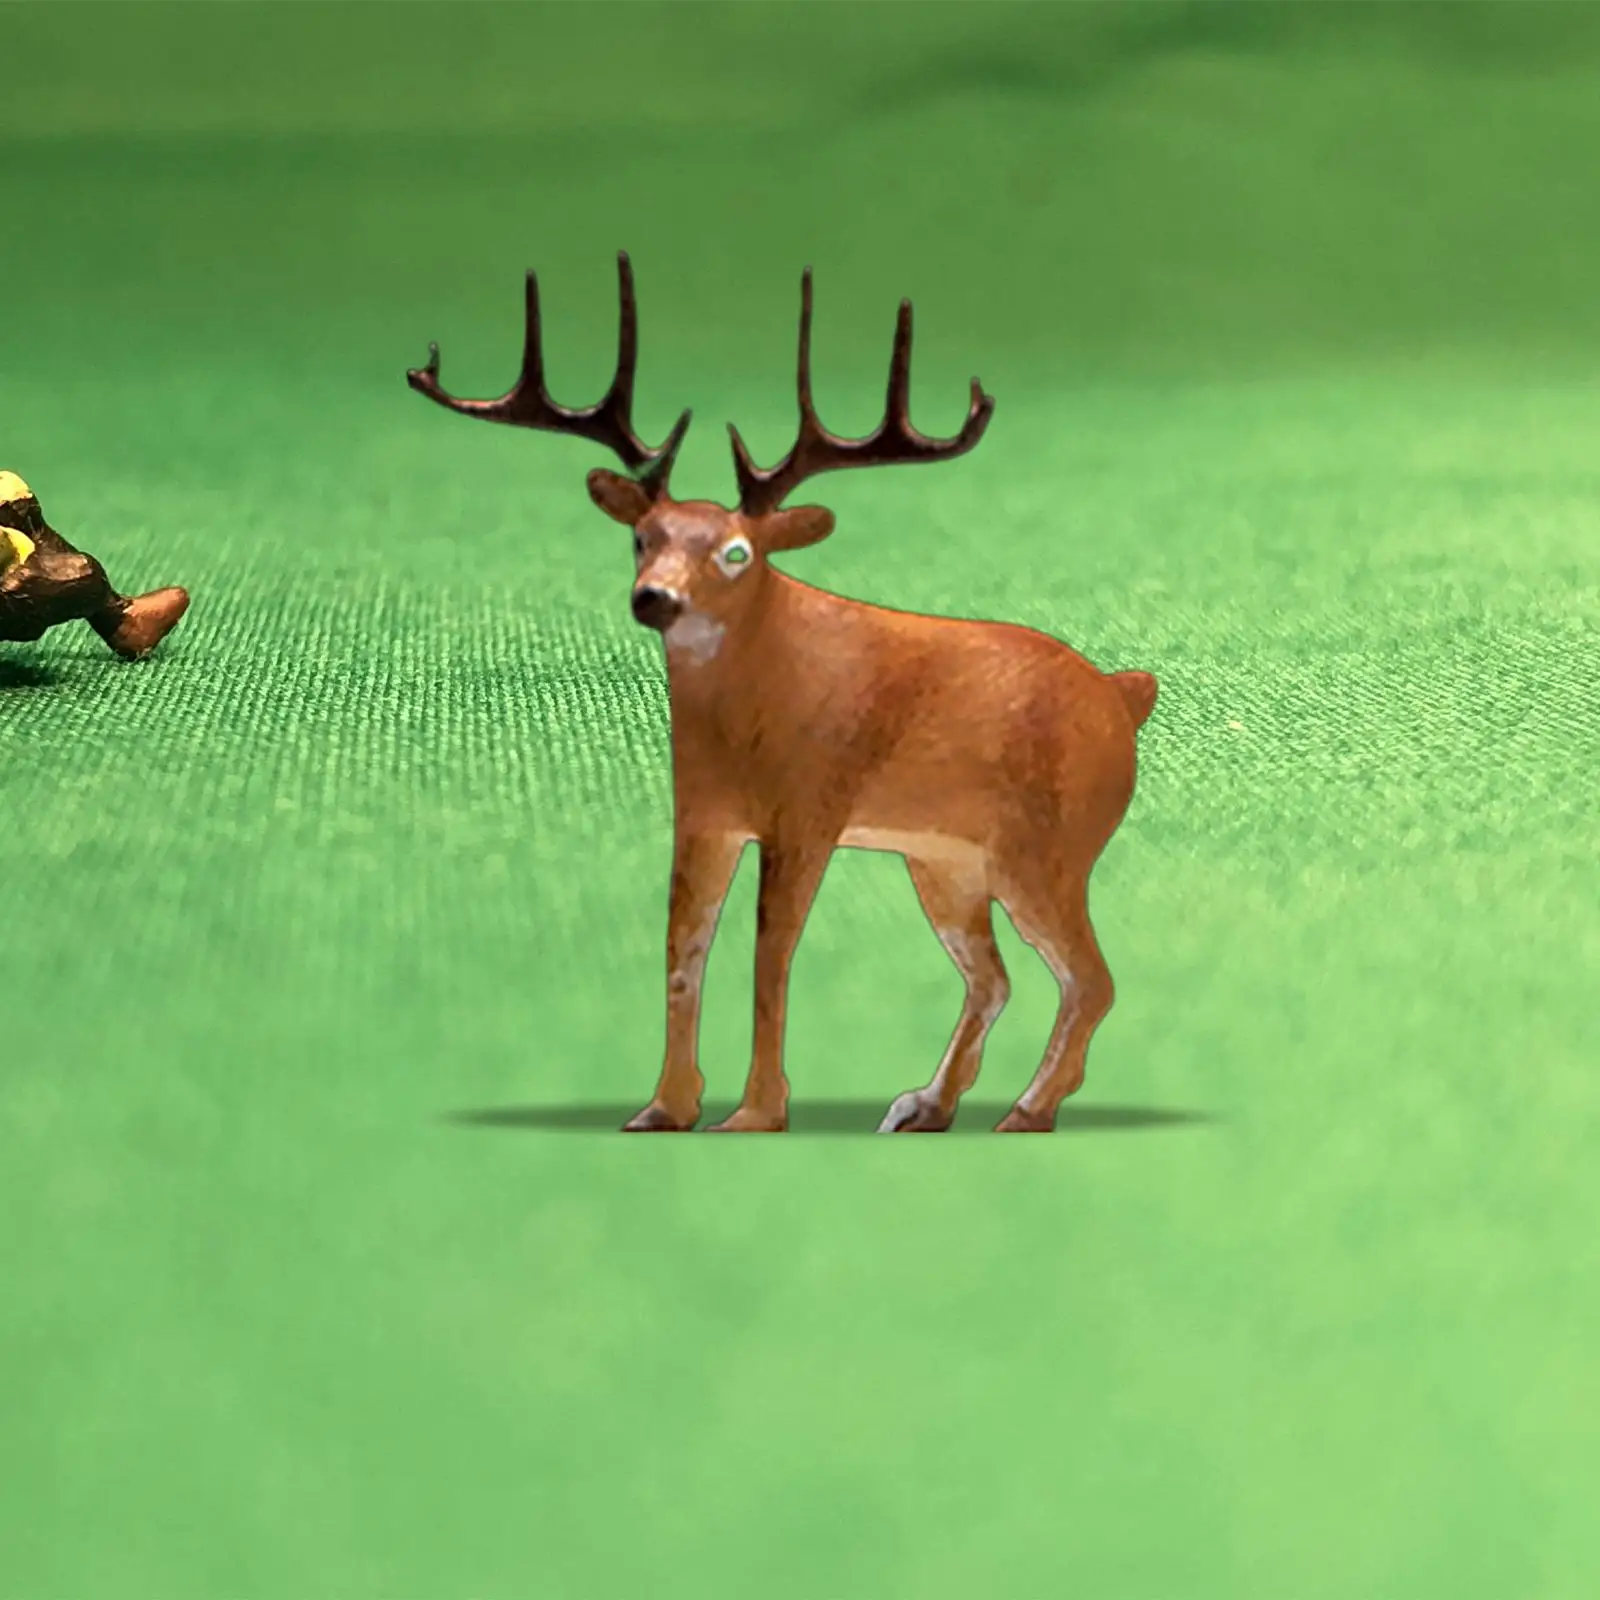 Elk Figurine 1:64 Deer Figurine Photo Props DIY Projects Miniature Scene